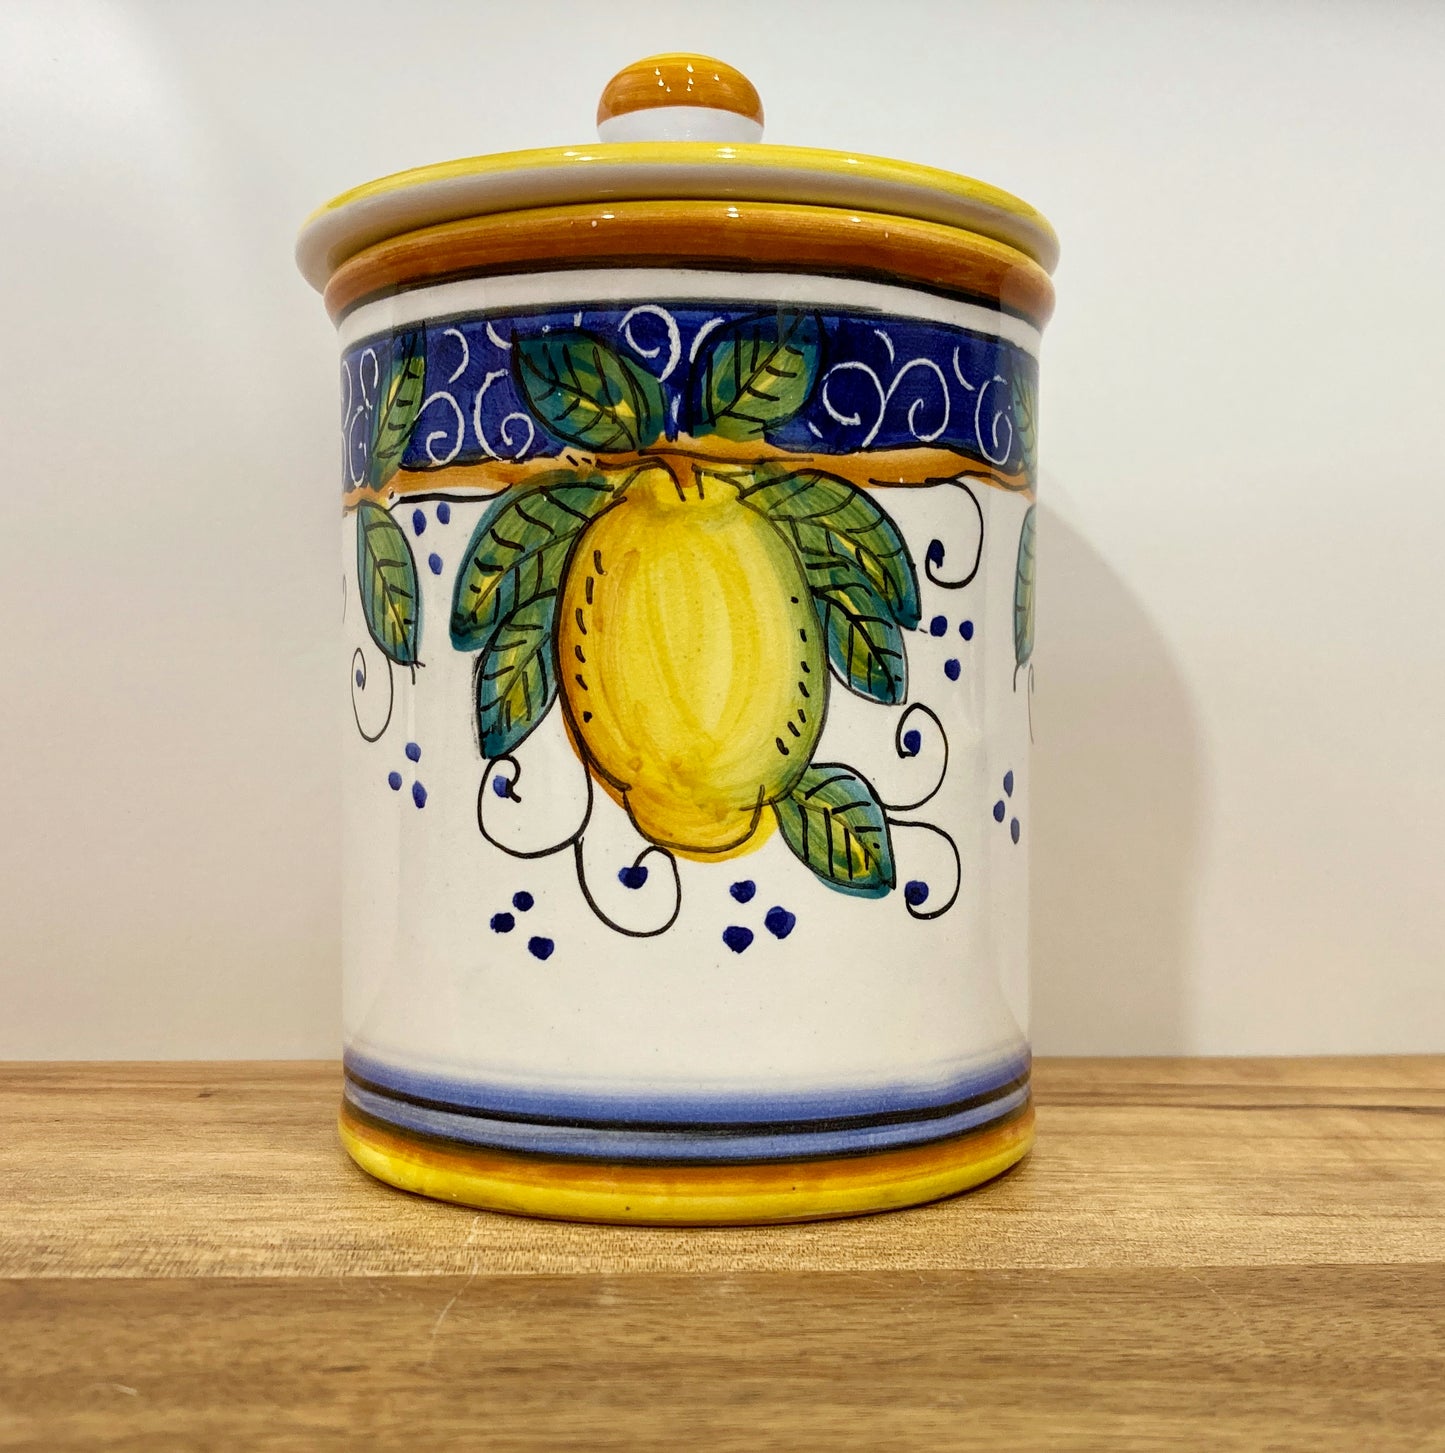 Mediterranean Lemons Majolica Italian Ceramic Jar Canister